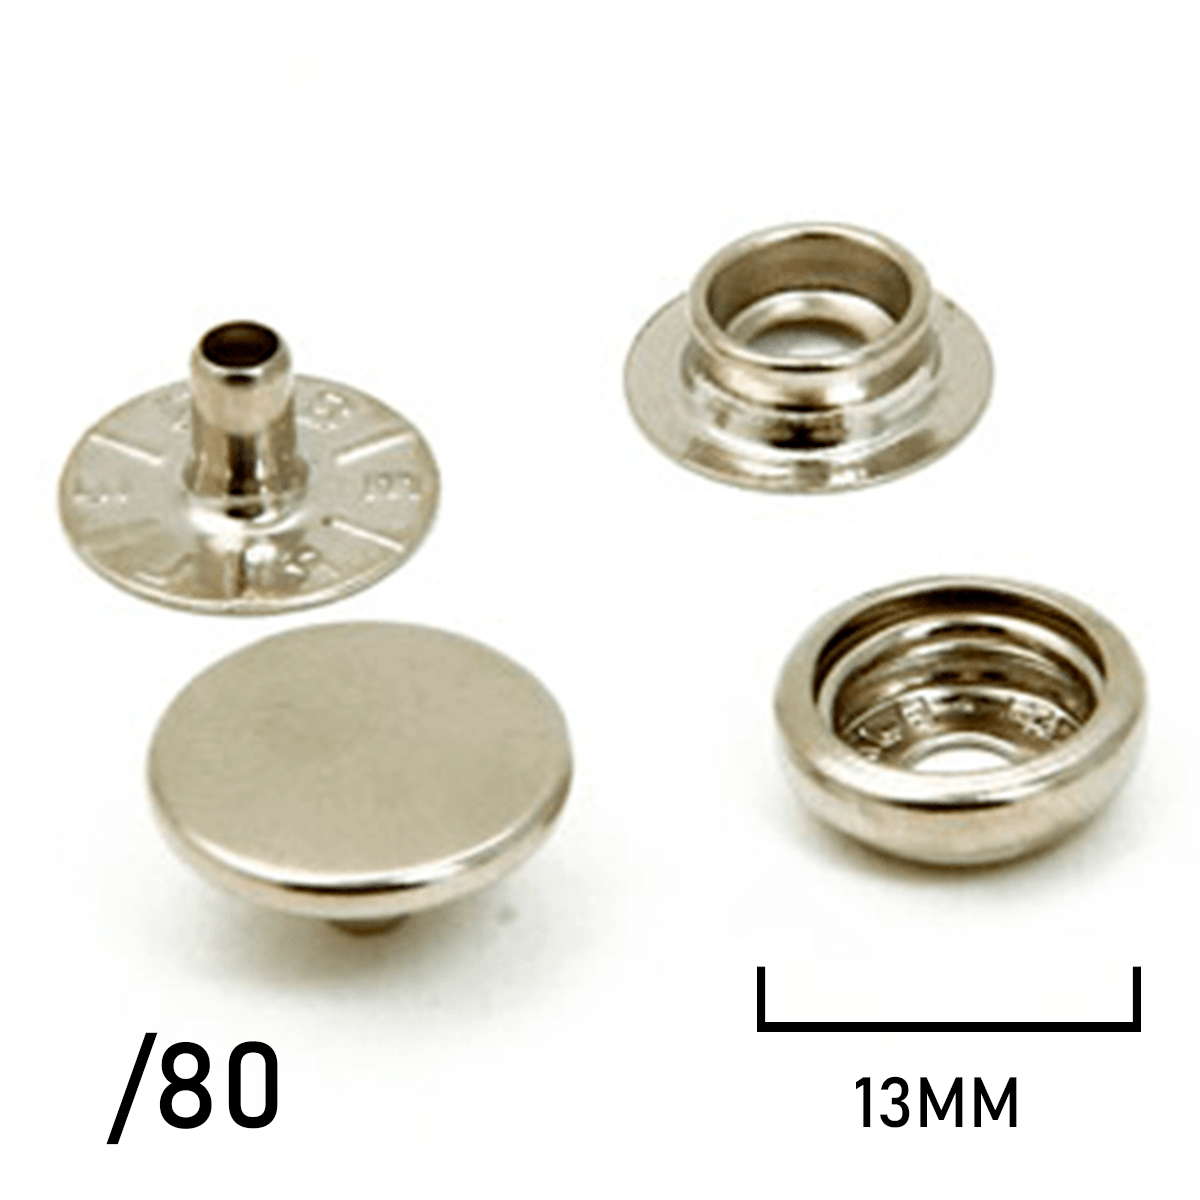 Botão de Pressão - Dallmac - Ferro - 13mm - C/200und - Ref: 150/80